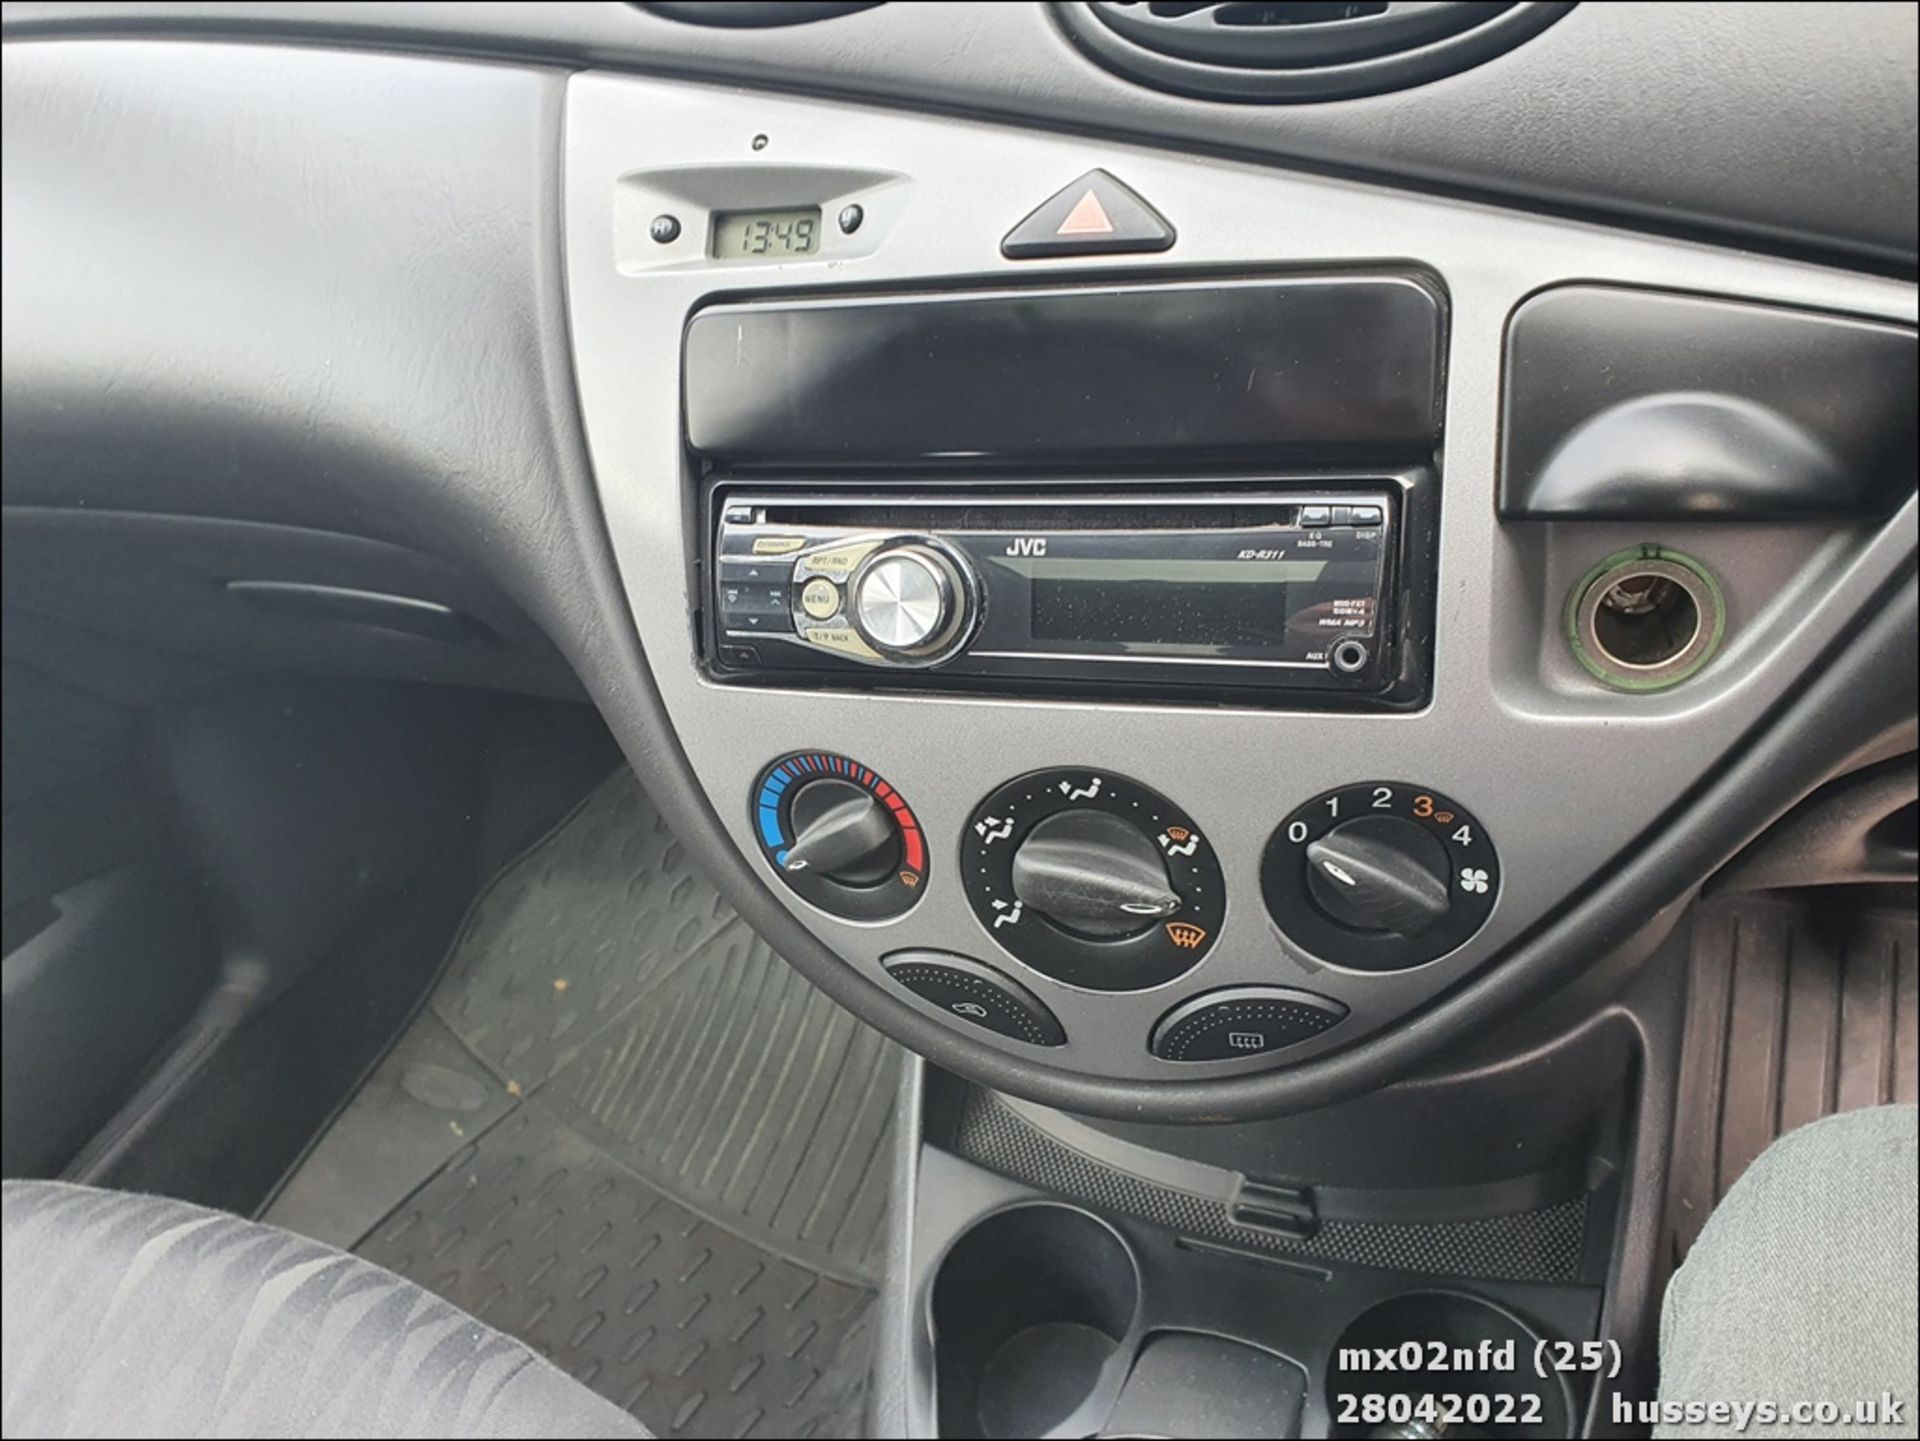 02/02 FORD FOCUS ZETEC - 1596cc 5dr Hatchback (Silver) - Image 24 of 26